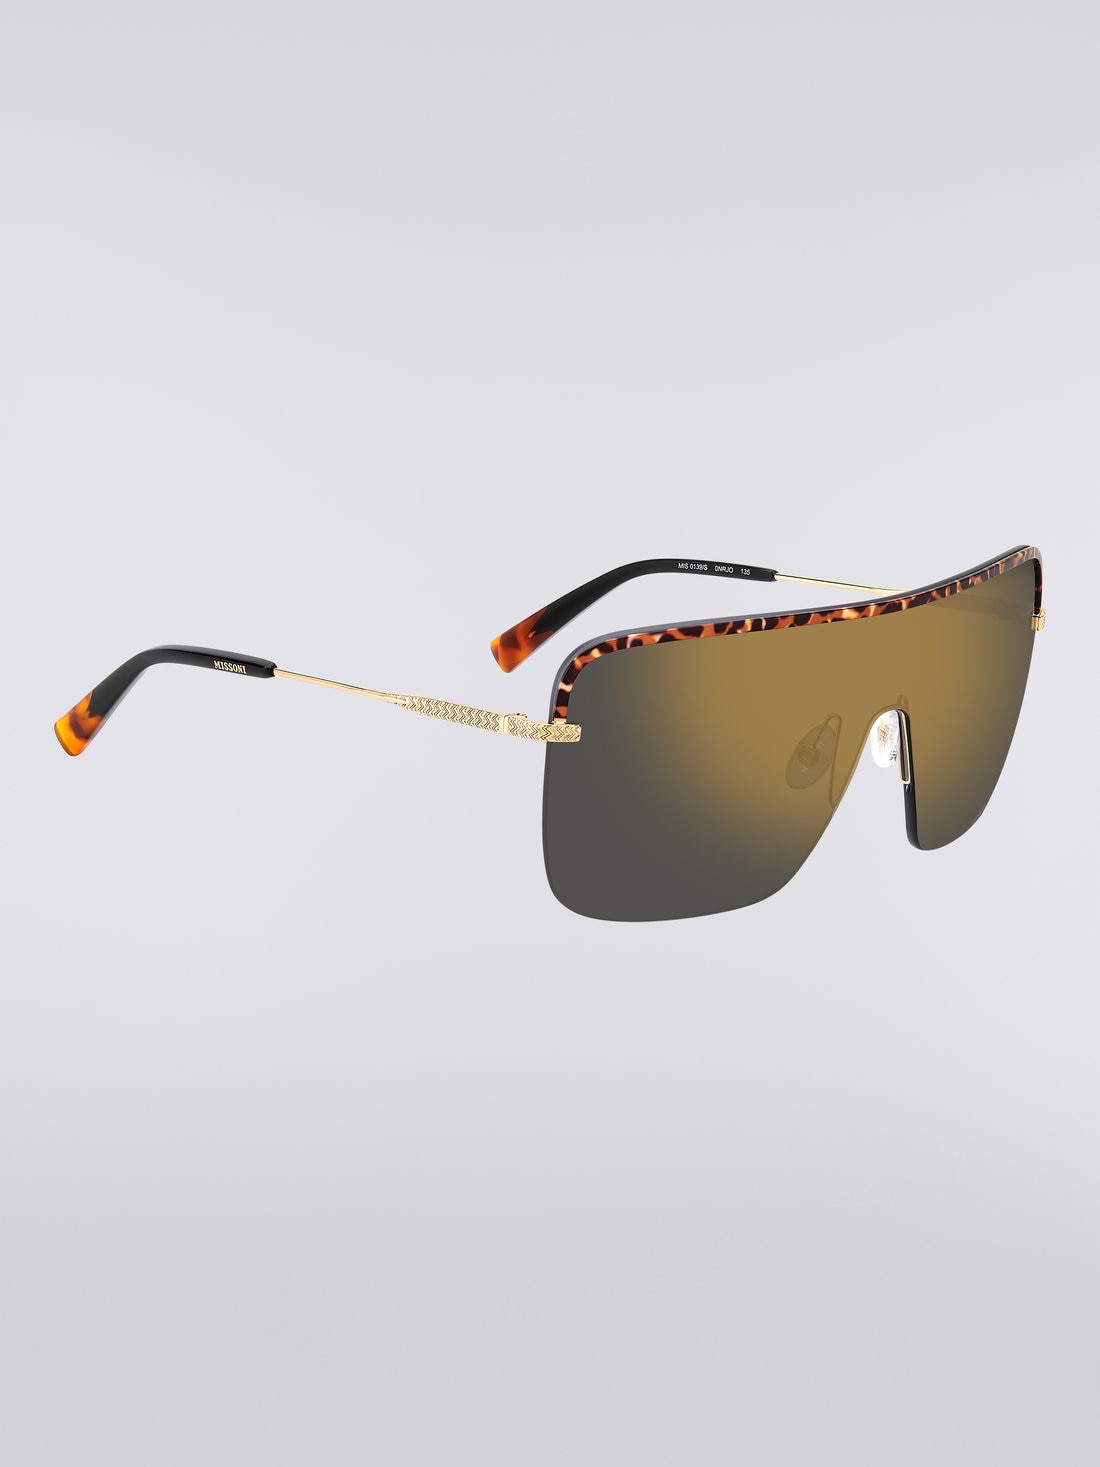 Missoni Seasonal Metal Sunglasses, Multicoloured  - 8051575840210 - 2